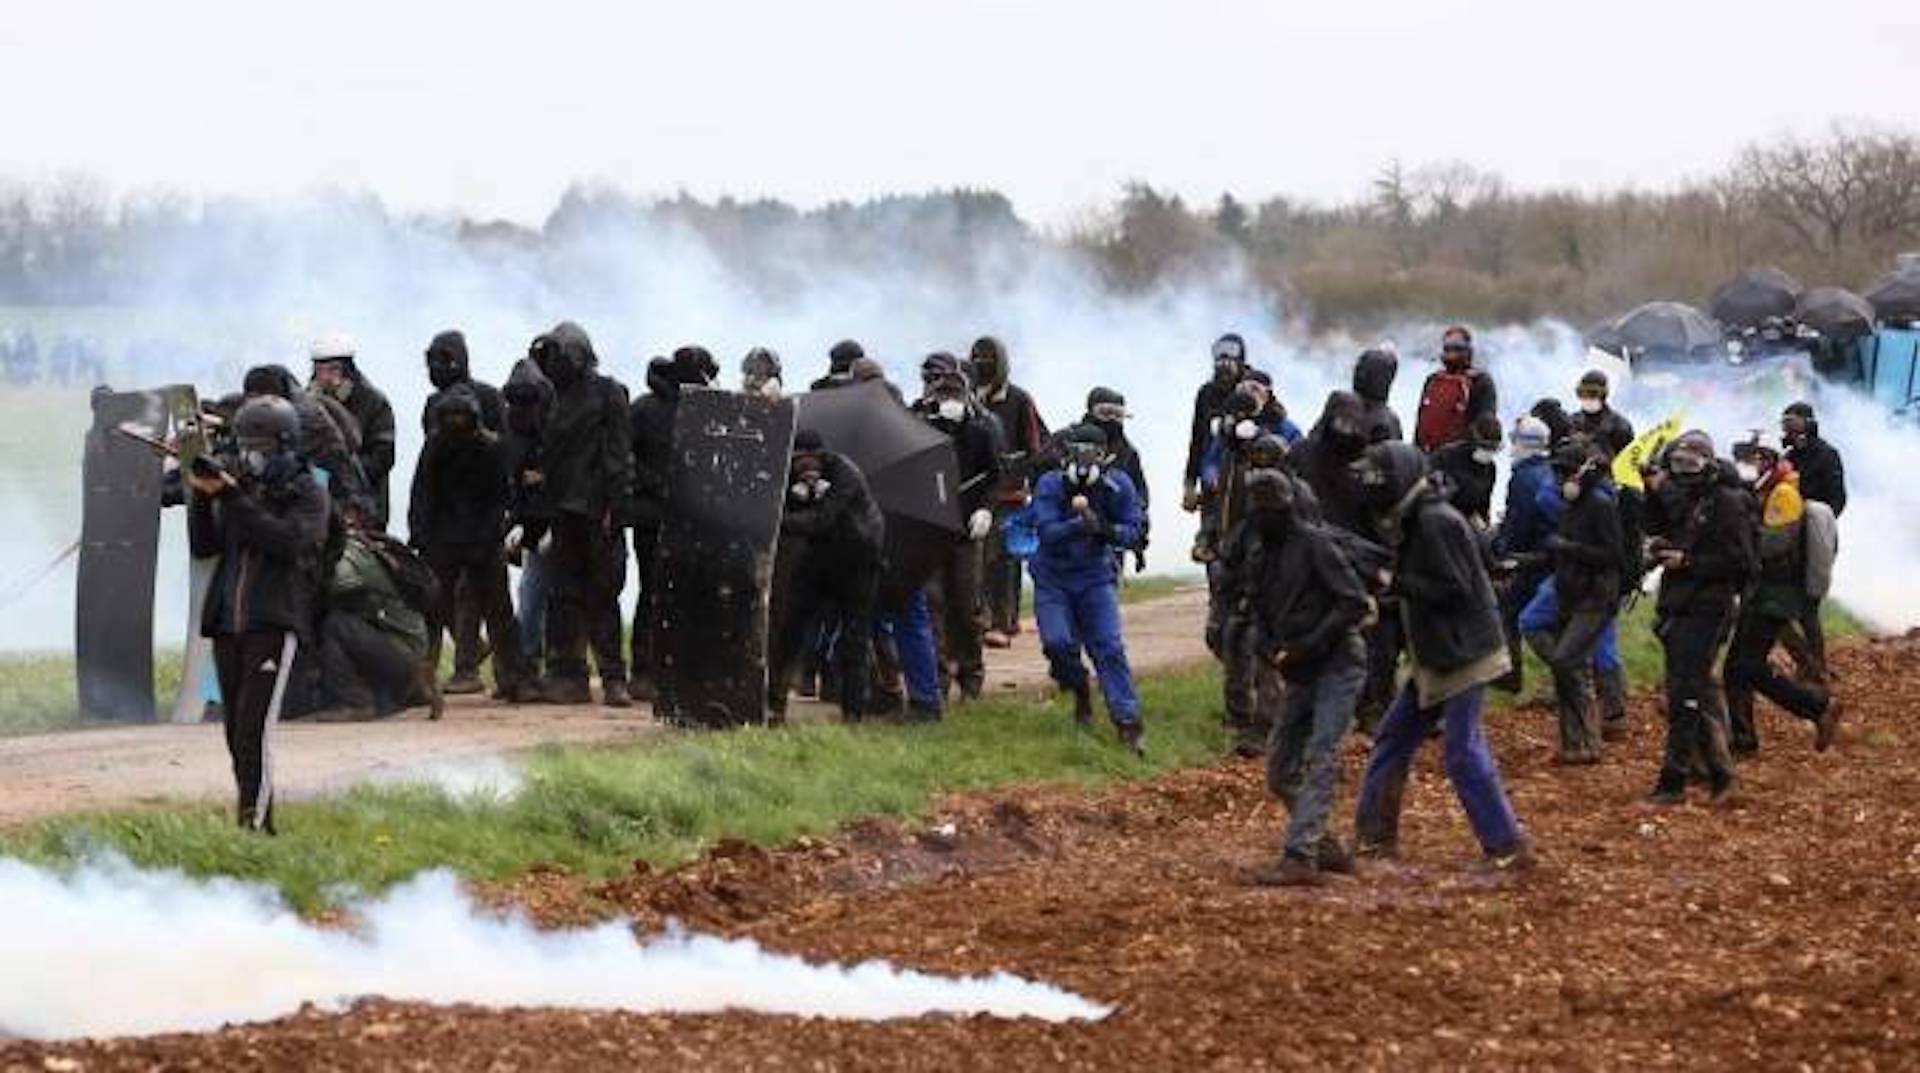 Francia, manifestanti in coma dopo gli scontri a Sainte Soline con la polizia: le famiglie denunciano per tentato omicidio. Indaga il Difensore dei diritti